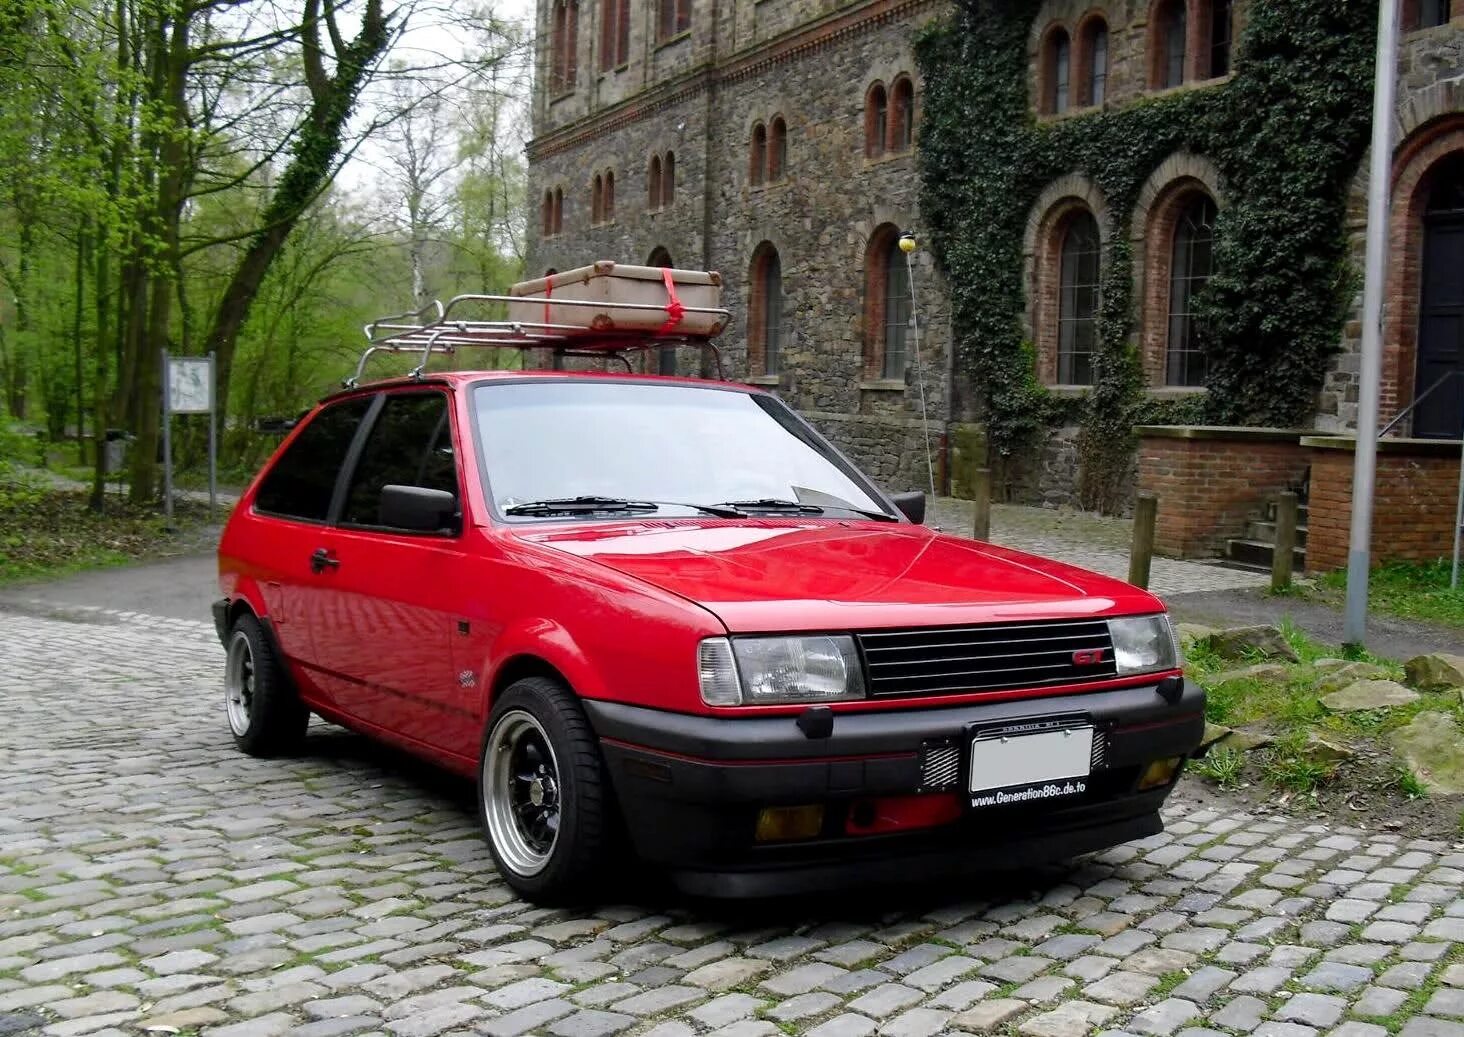 Vw polo 2. VW Polo 1990. VW Polo 86c. VW Polo 1991. Polo 86c gt.